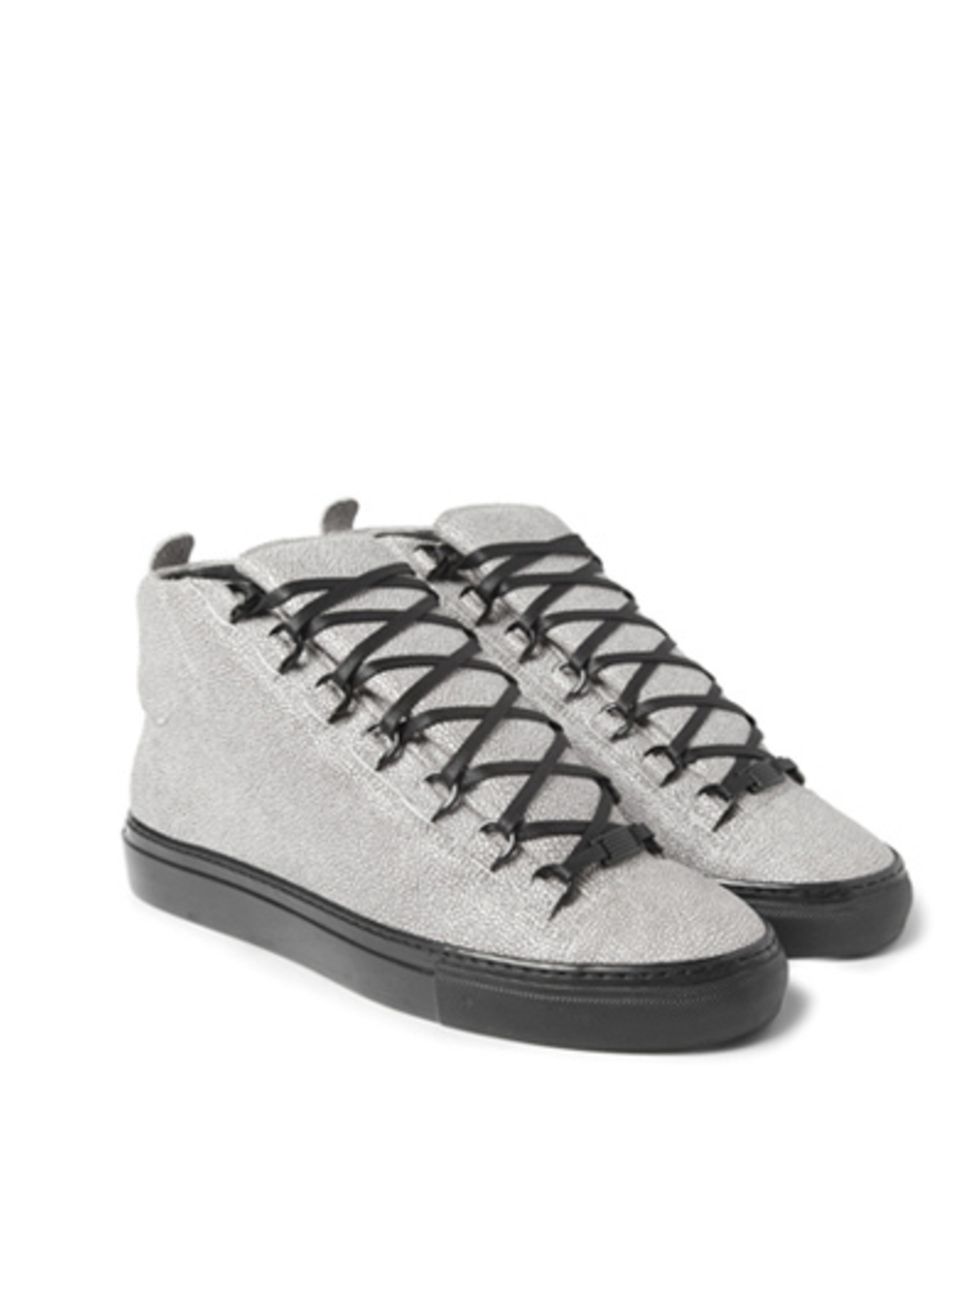 Footwear, Shoe, Product, White, Sneakers, Carmine, Tan, Black, Grey, Walking shoe, 